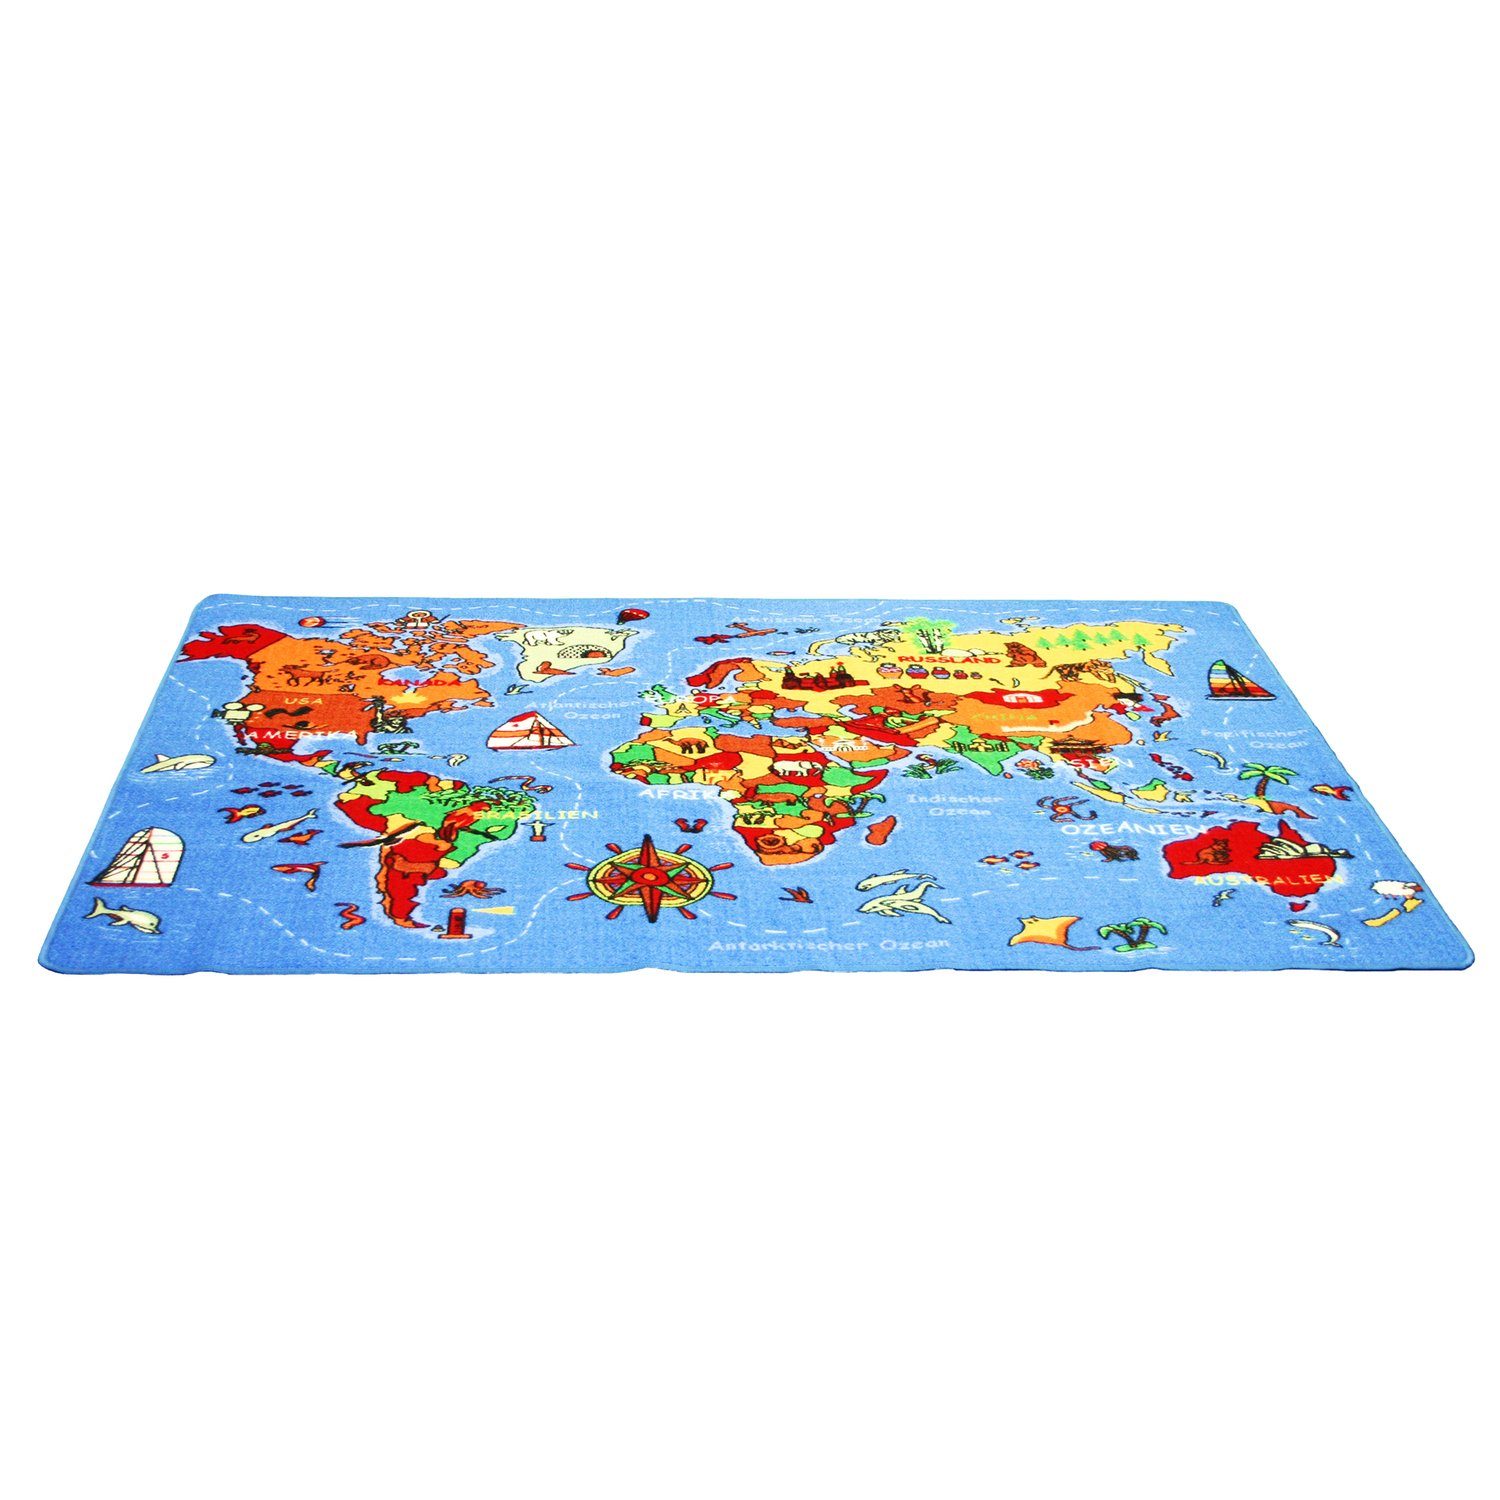 EDUPLAY Lernspielzeug Spielteppich "Welt", 140x200cm